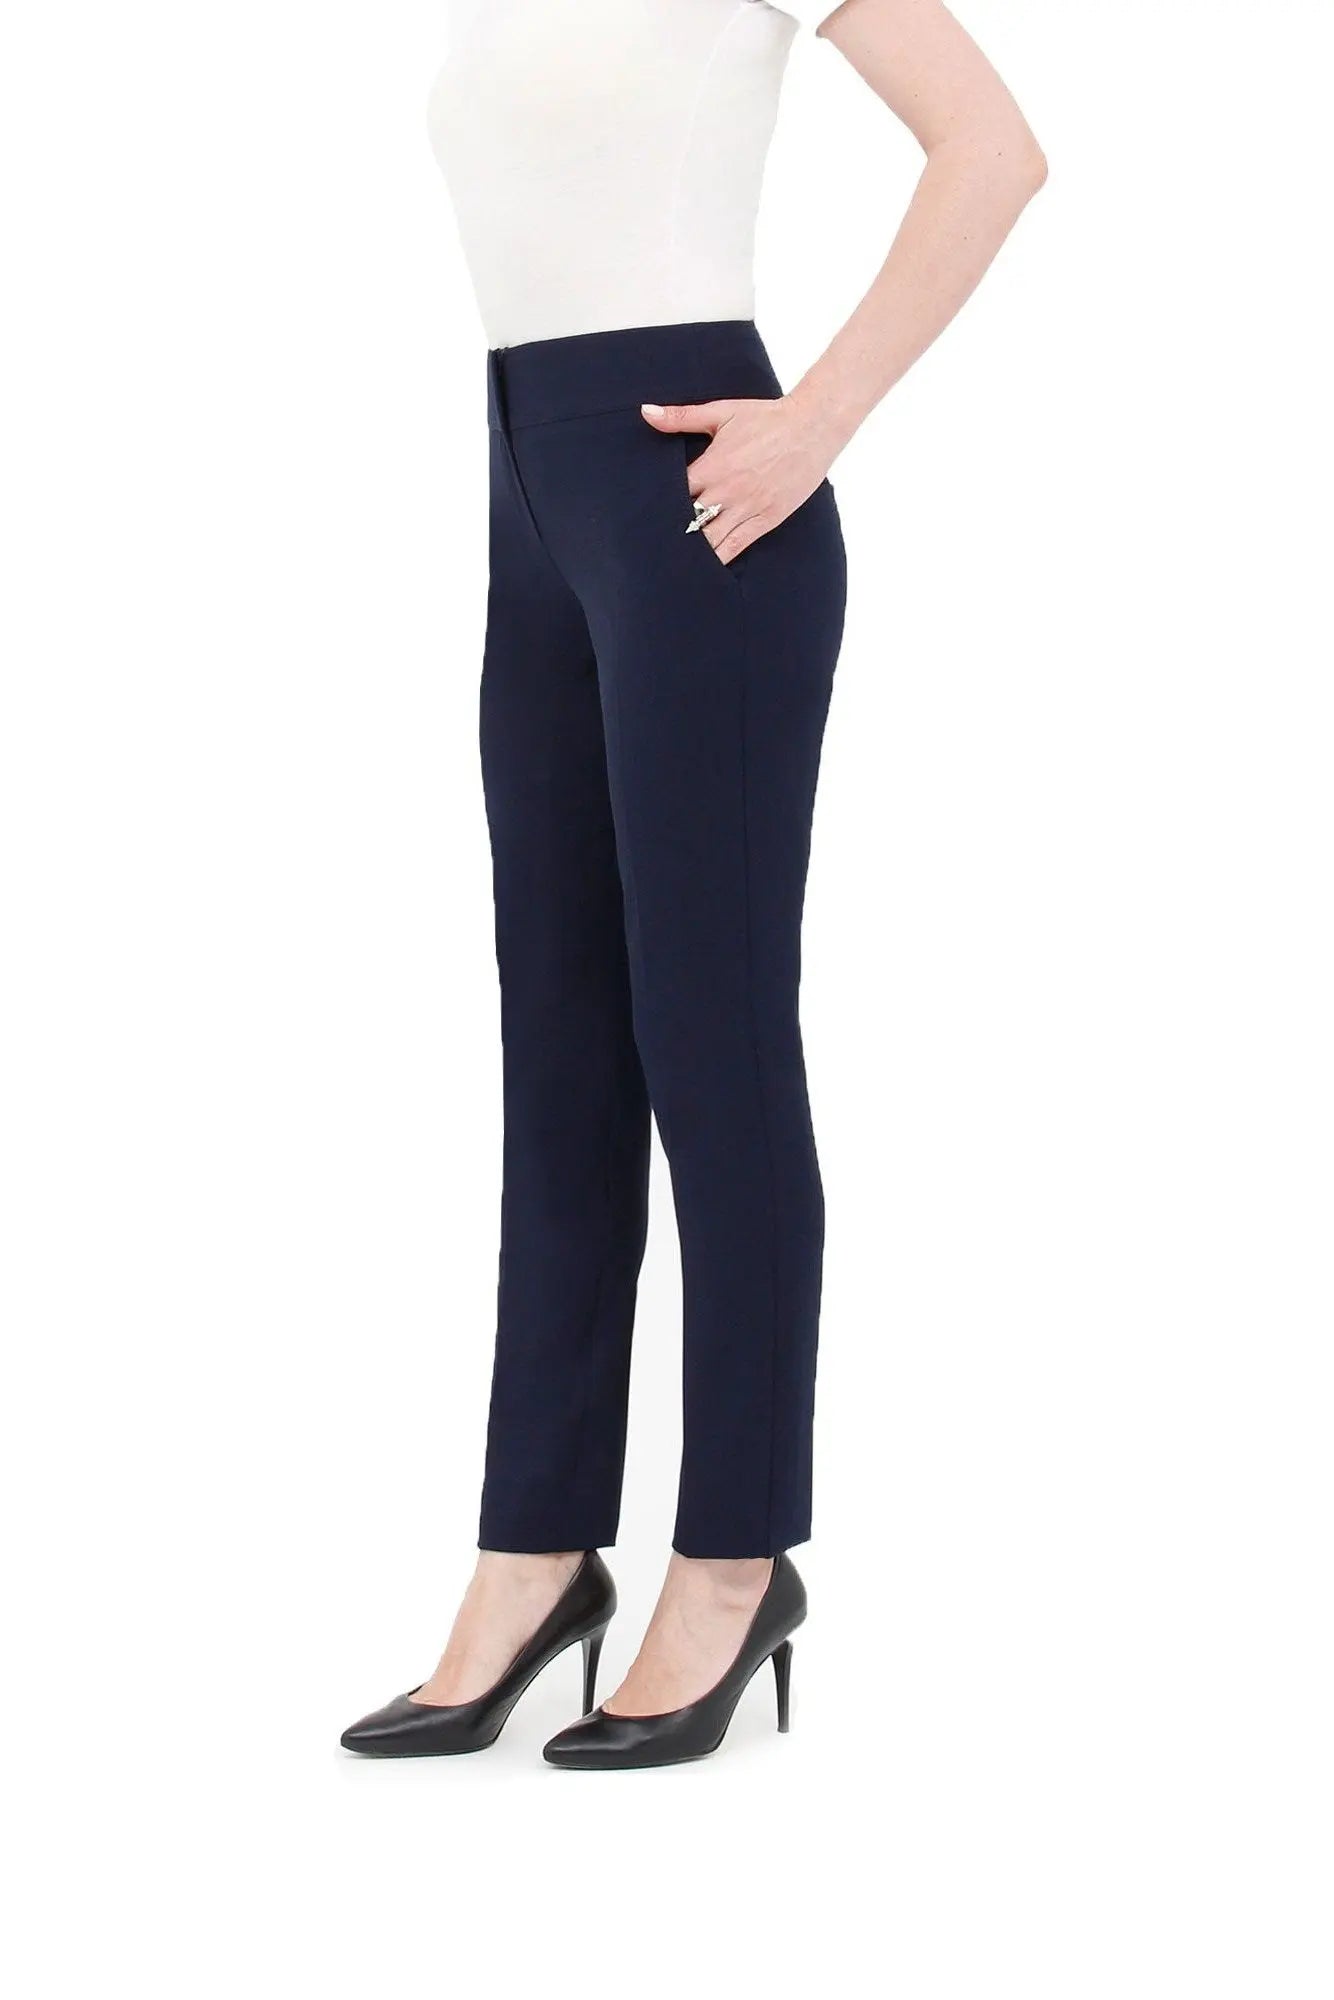 Dress Pants for Women Comfort High Waist Straight Leg Pants (Navy